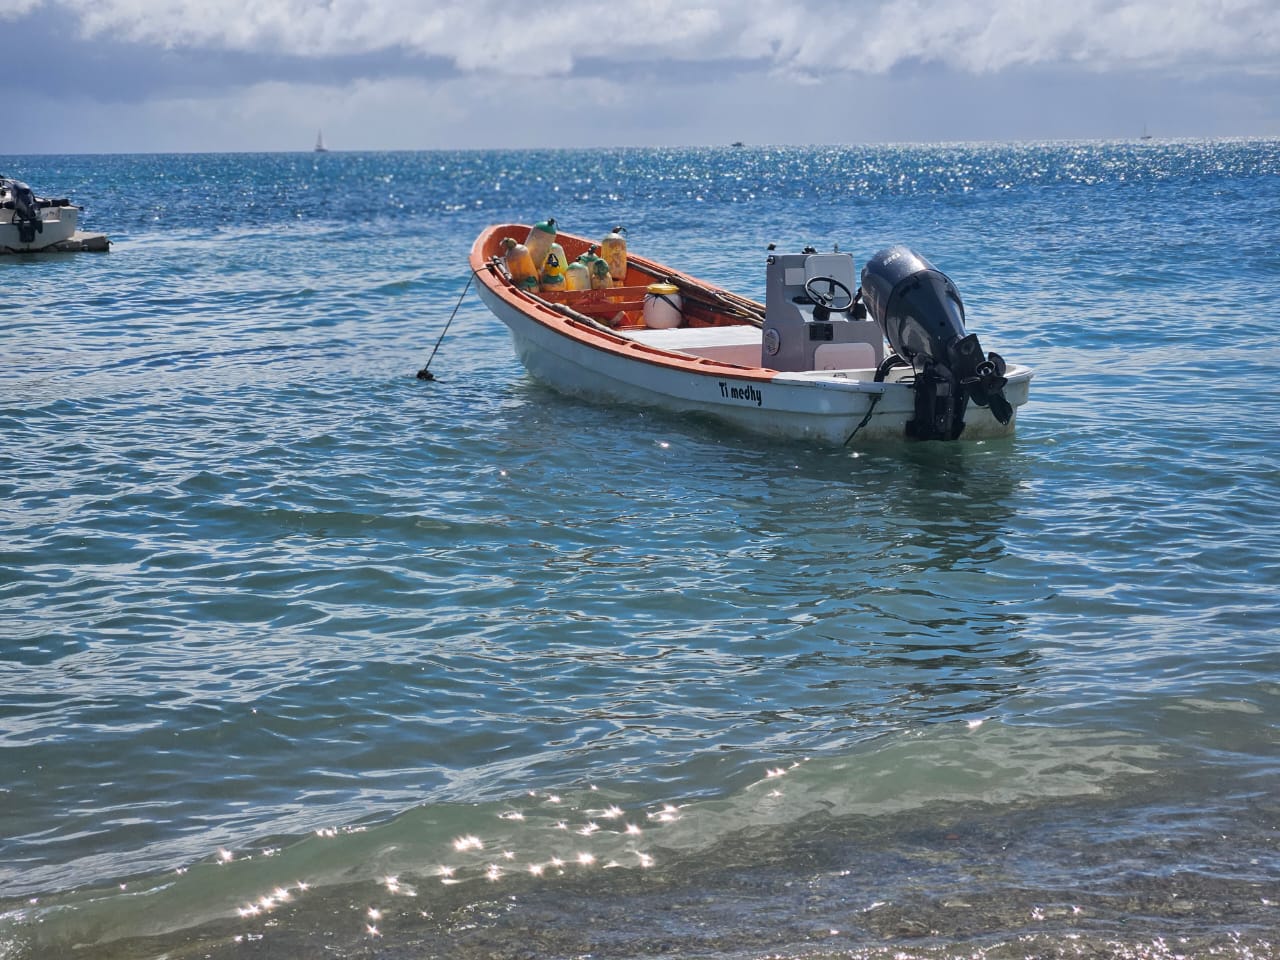     Pêcheur disparu à Sainte-Luce : Les recherches sont suspendues 

